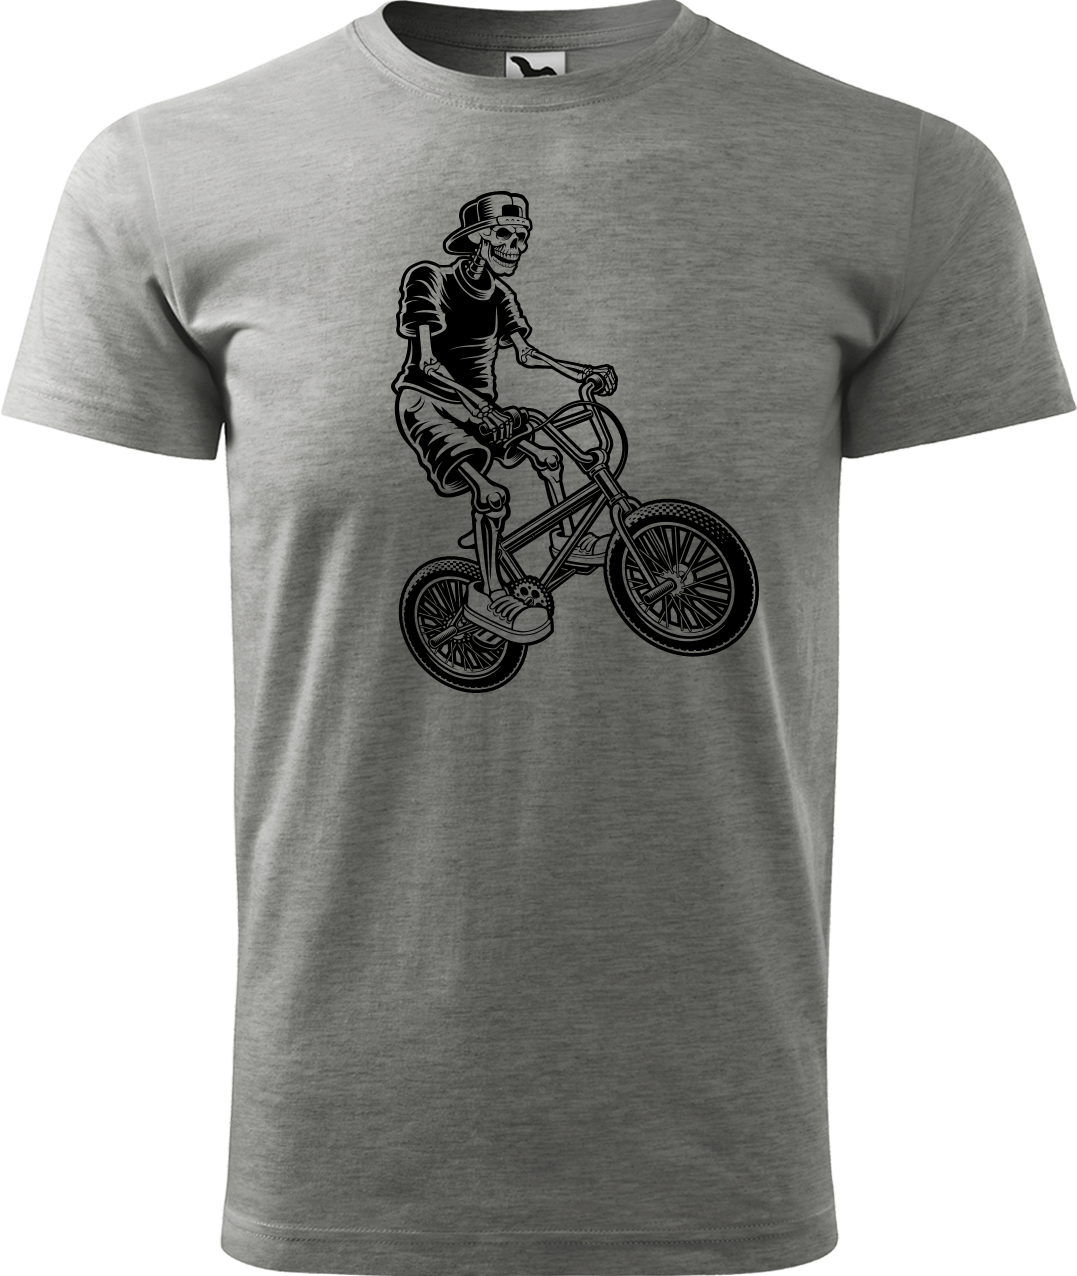 Pánské tričko s kolem - Trial Bike Velikost: M, Barva: Tmavě šedý melír (12)